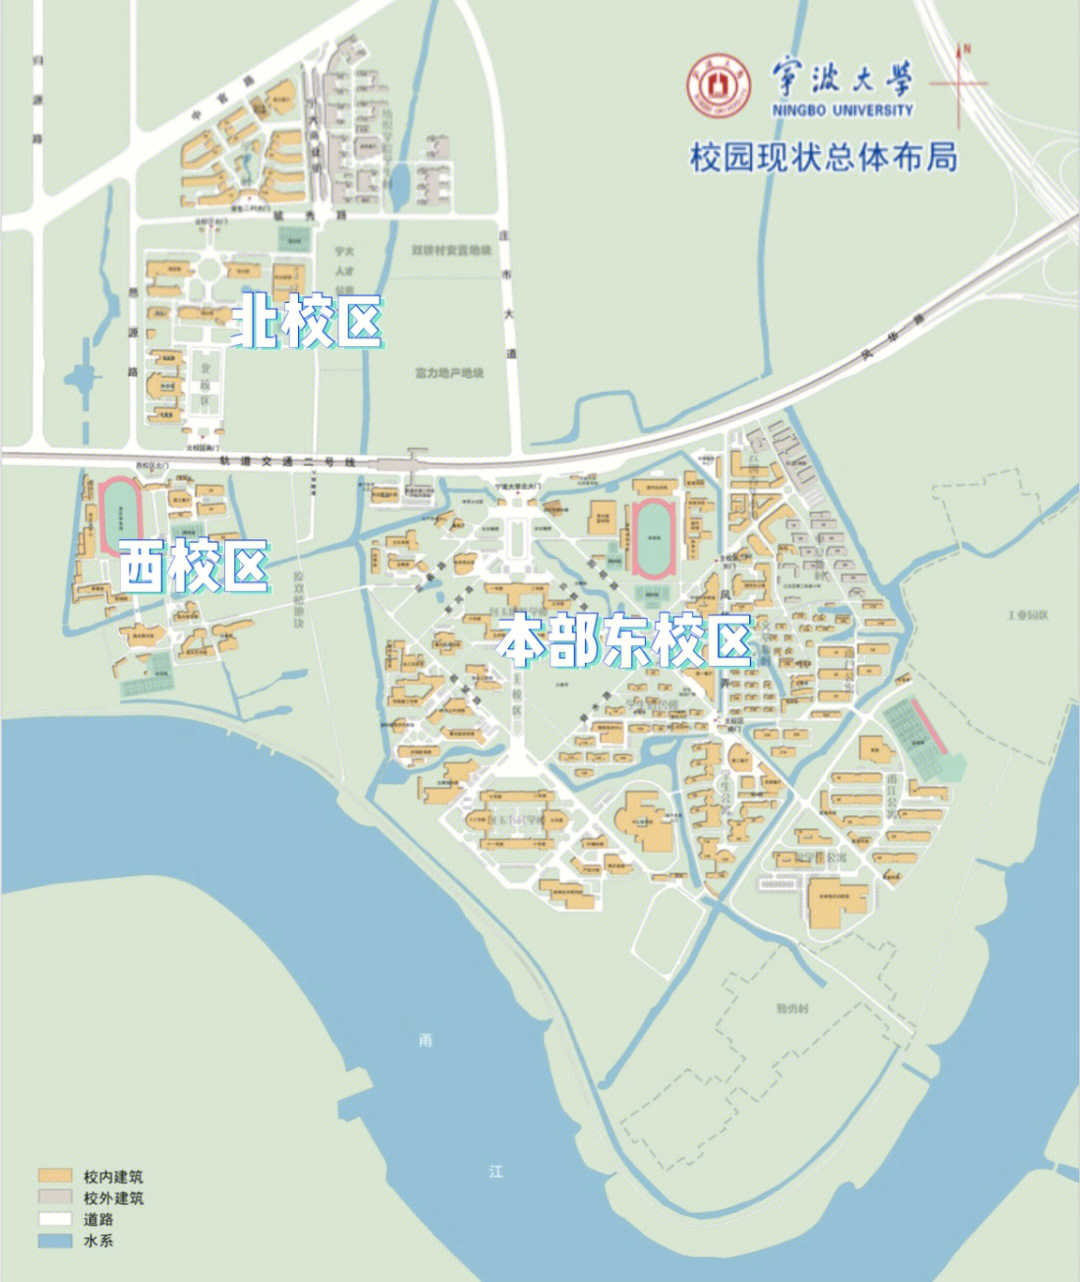 宁波大学可大体分为:本部东校区,北校区,西校区和植物园的梅山校区,还